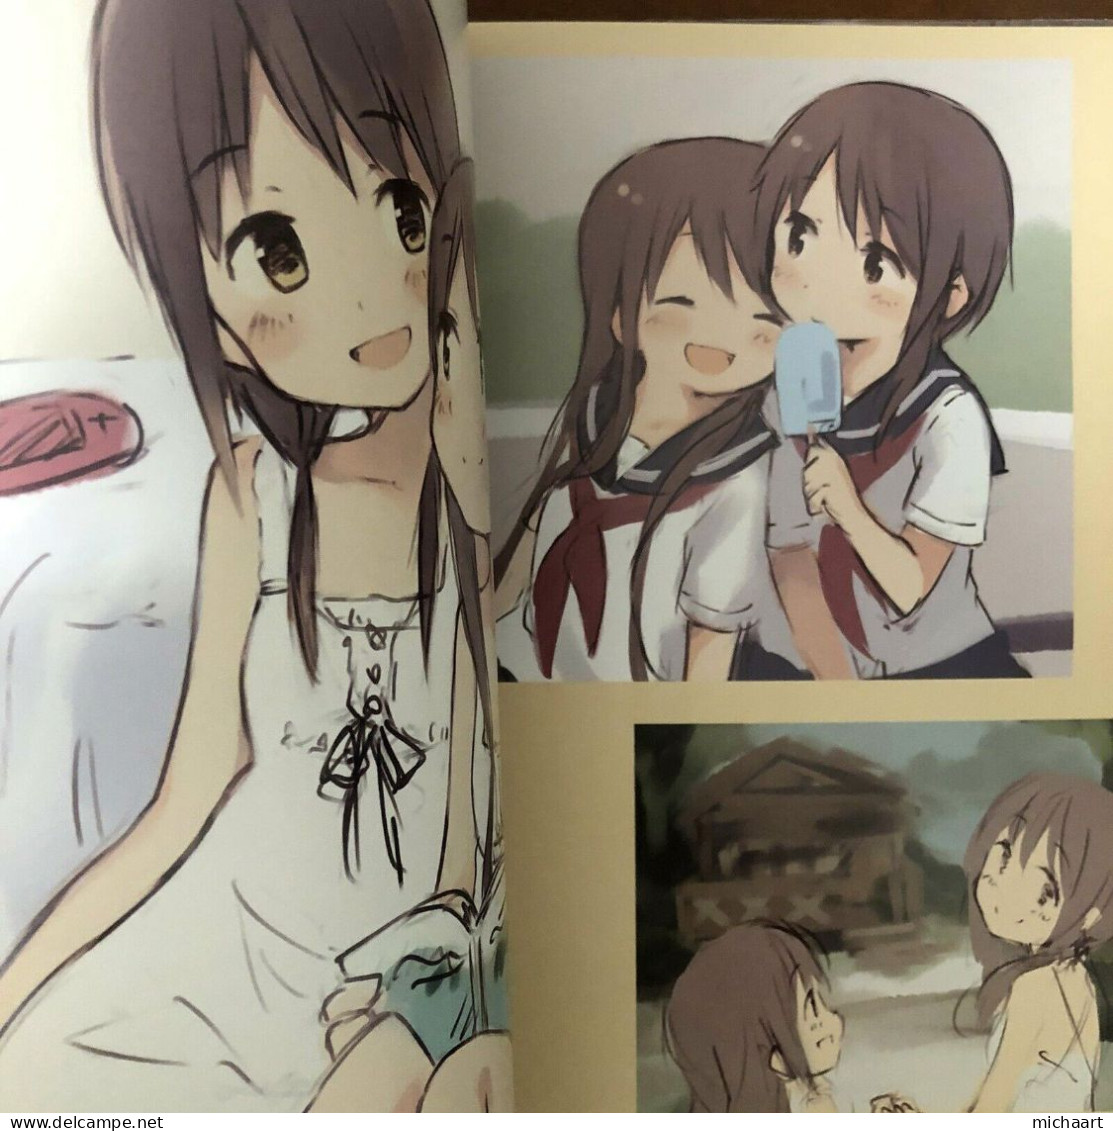 Doujinshi Girls Log Vol. 7 Lakeside Holiday Kyuri Art Book Japan Manga 03032